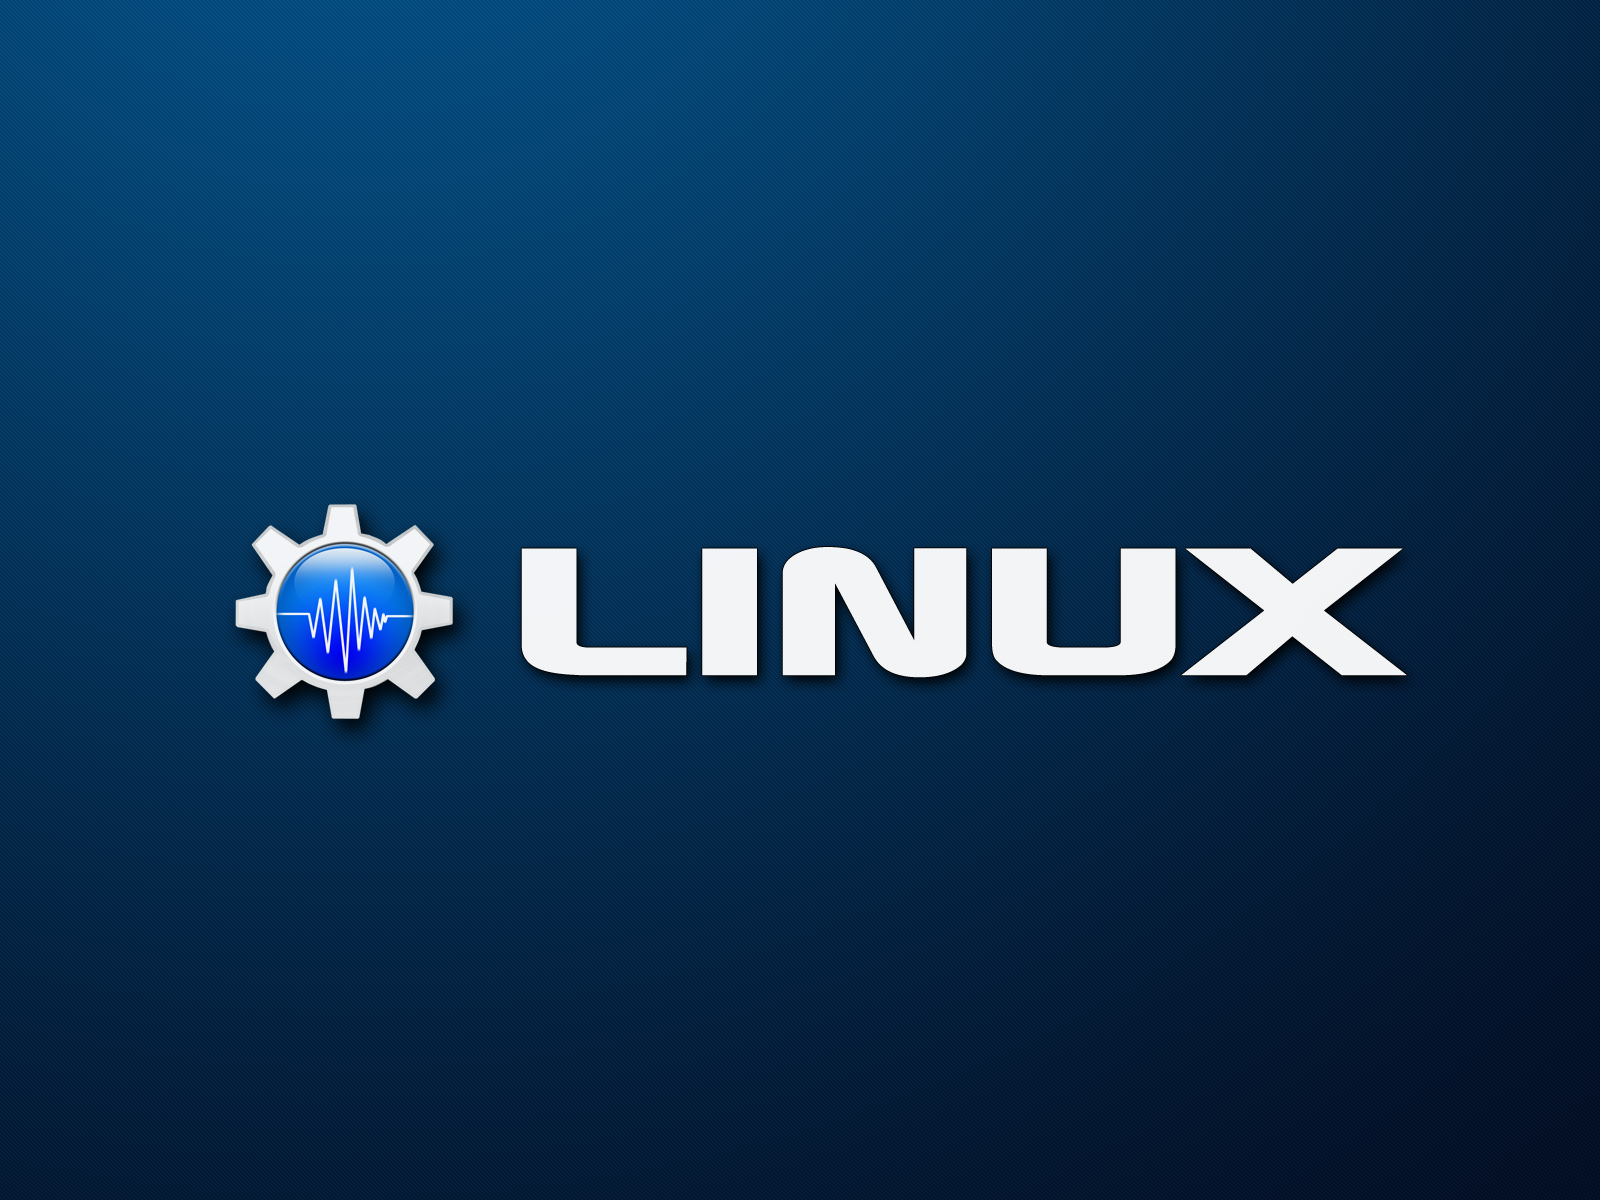 리눅스 명령 벽지,푸른,본문,폰트,하늘,강청색